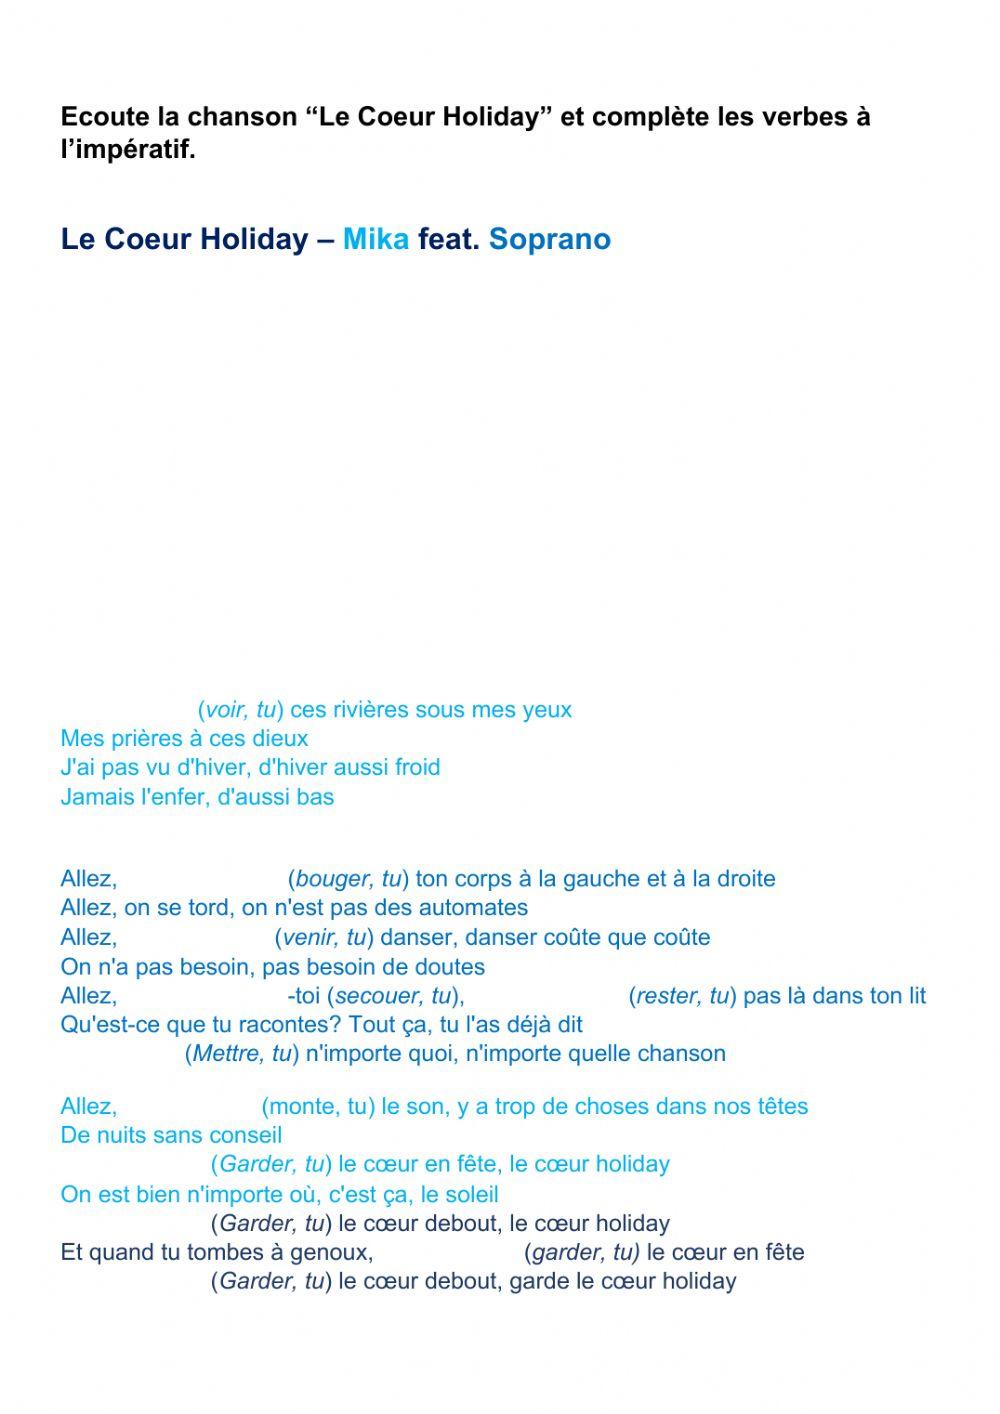 L'impératif - Chanson Le coeur holiday (Mika feat.Maitre Gims)